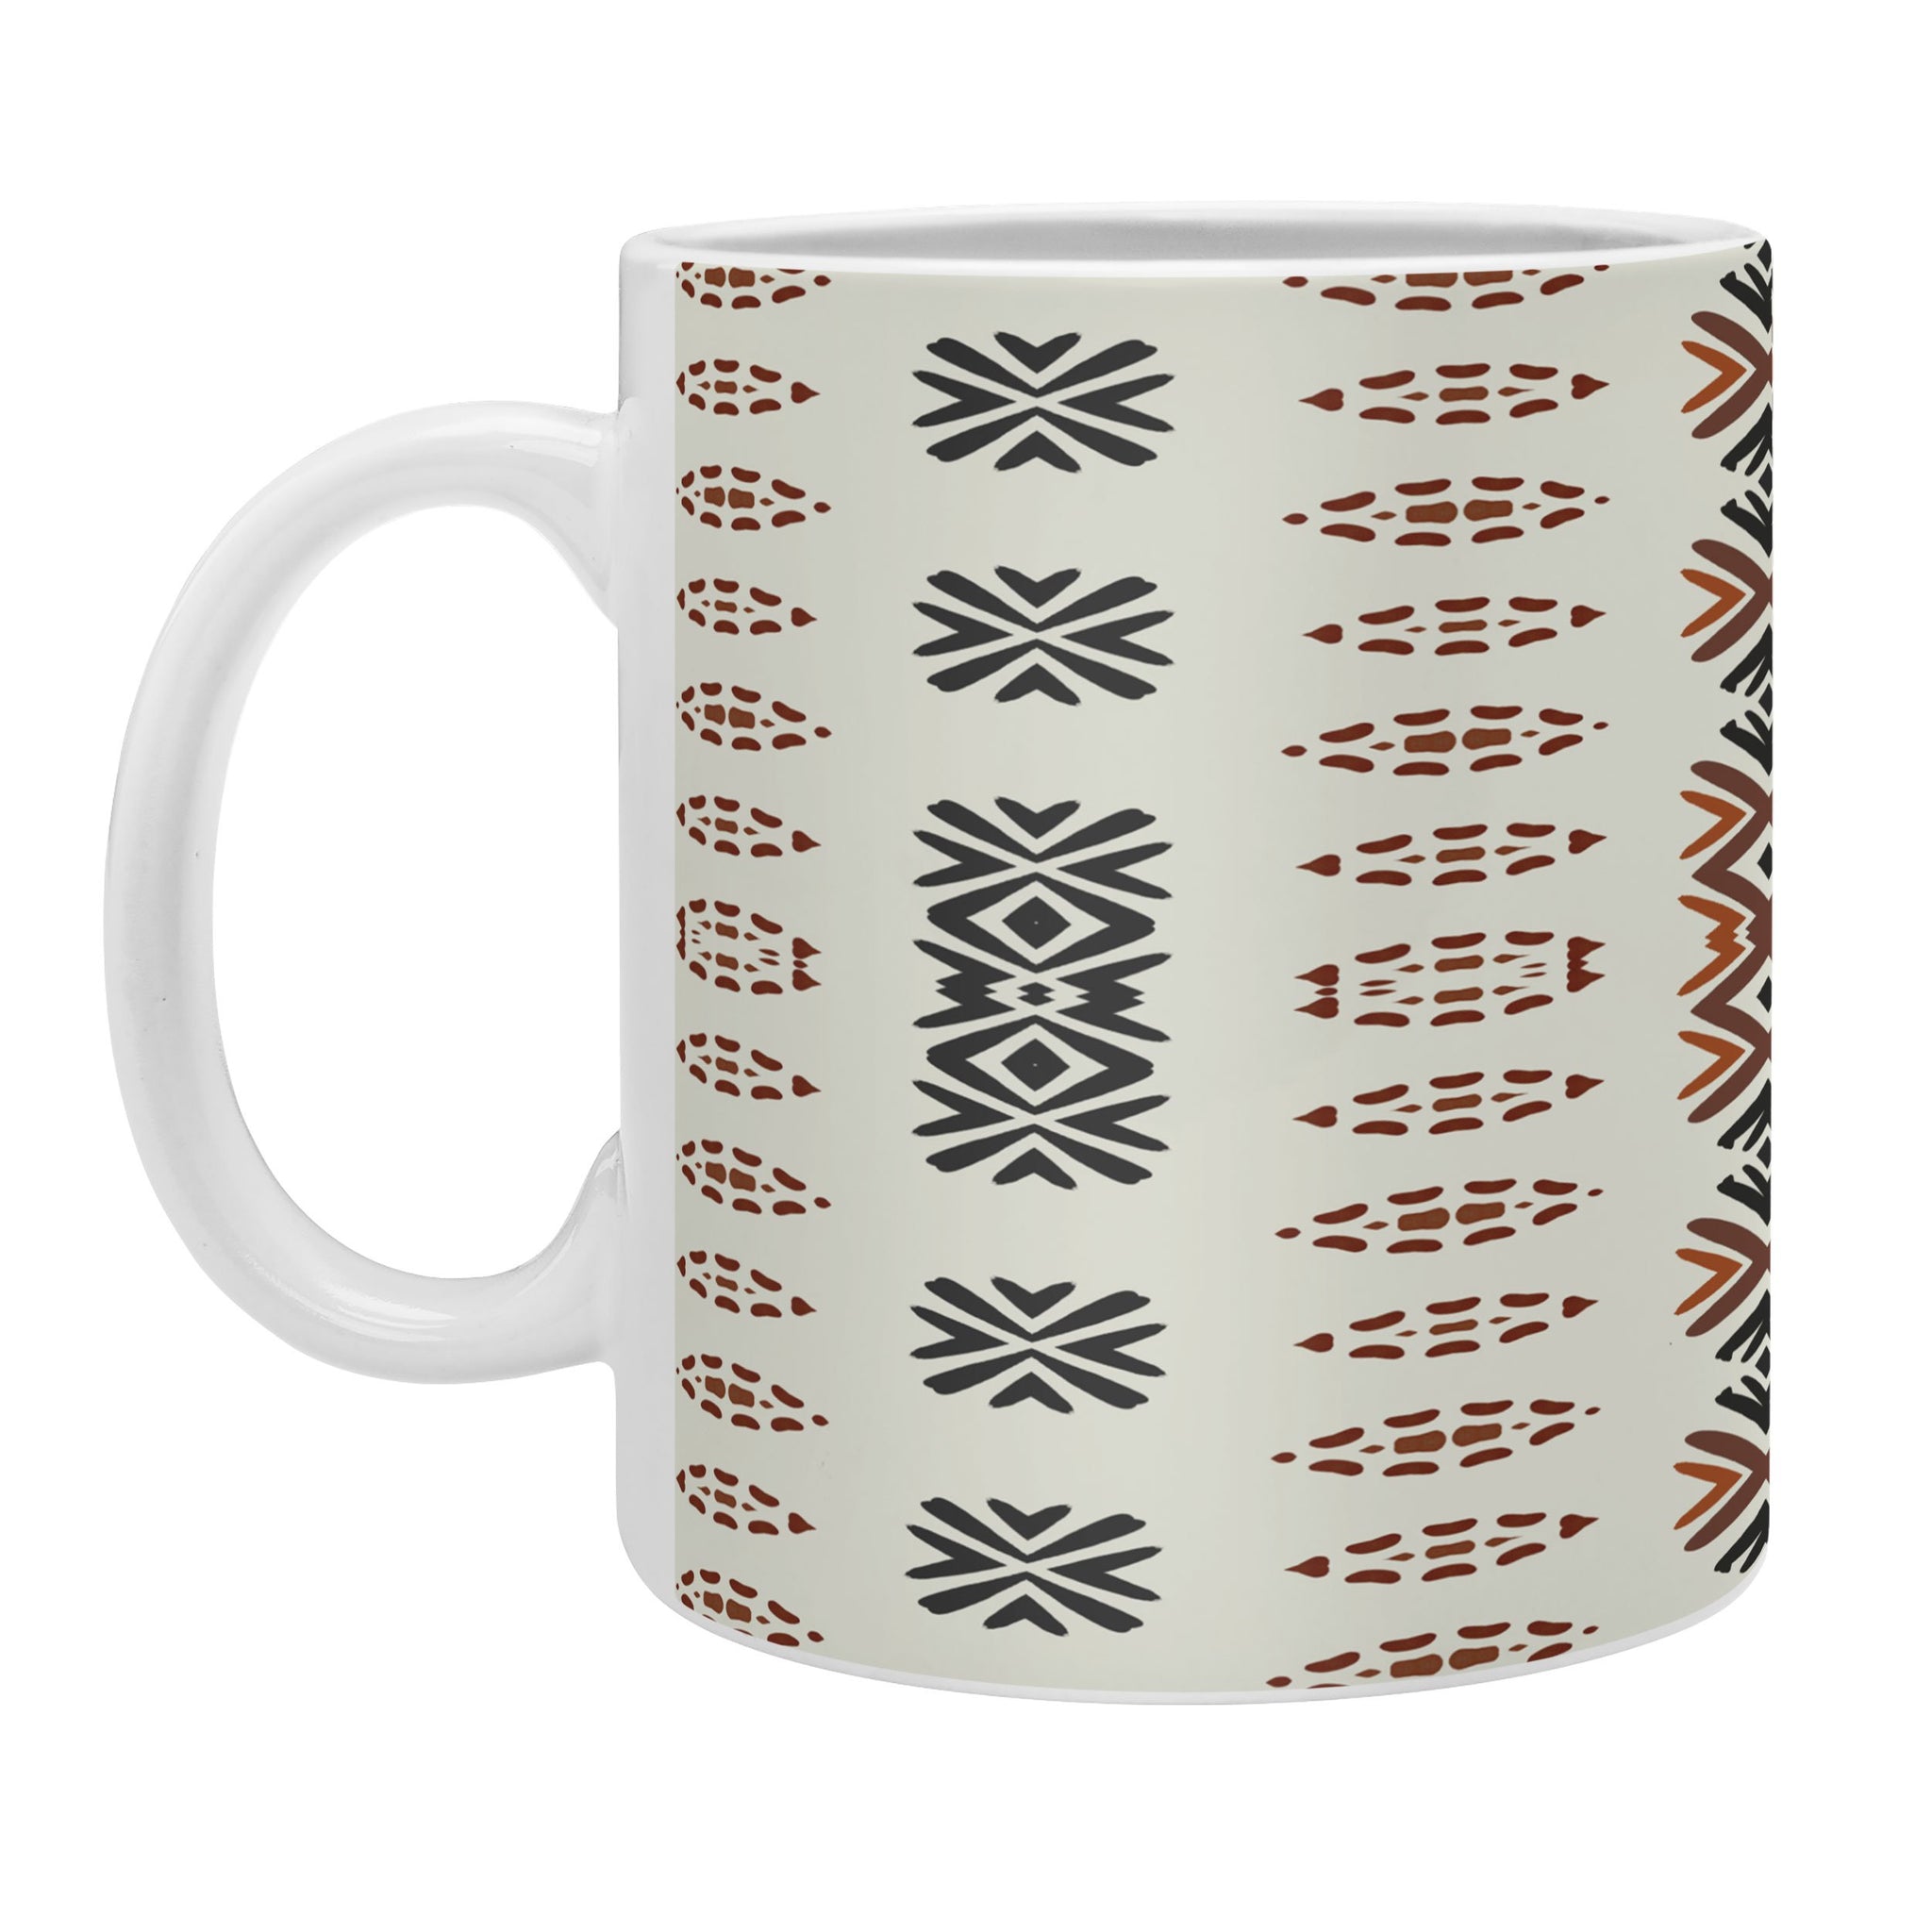 https://lilbeesbohemian.com/cdn/shop/products/sheila-wenzel-ganny-western-tribal-geo-coffee-mug-right_2048x.jpg?v=1636128357